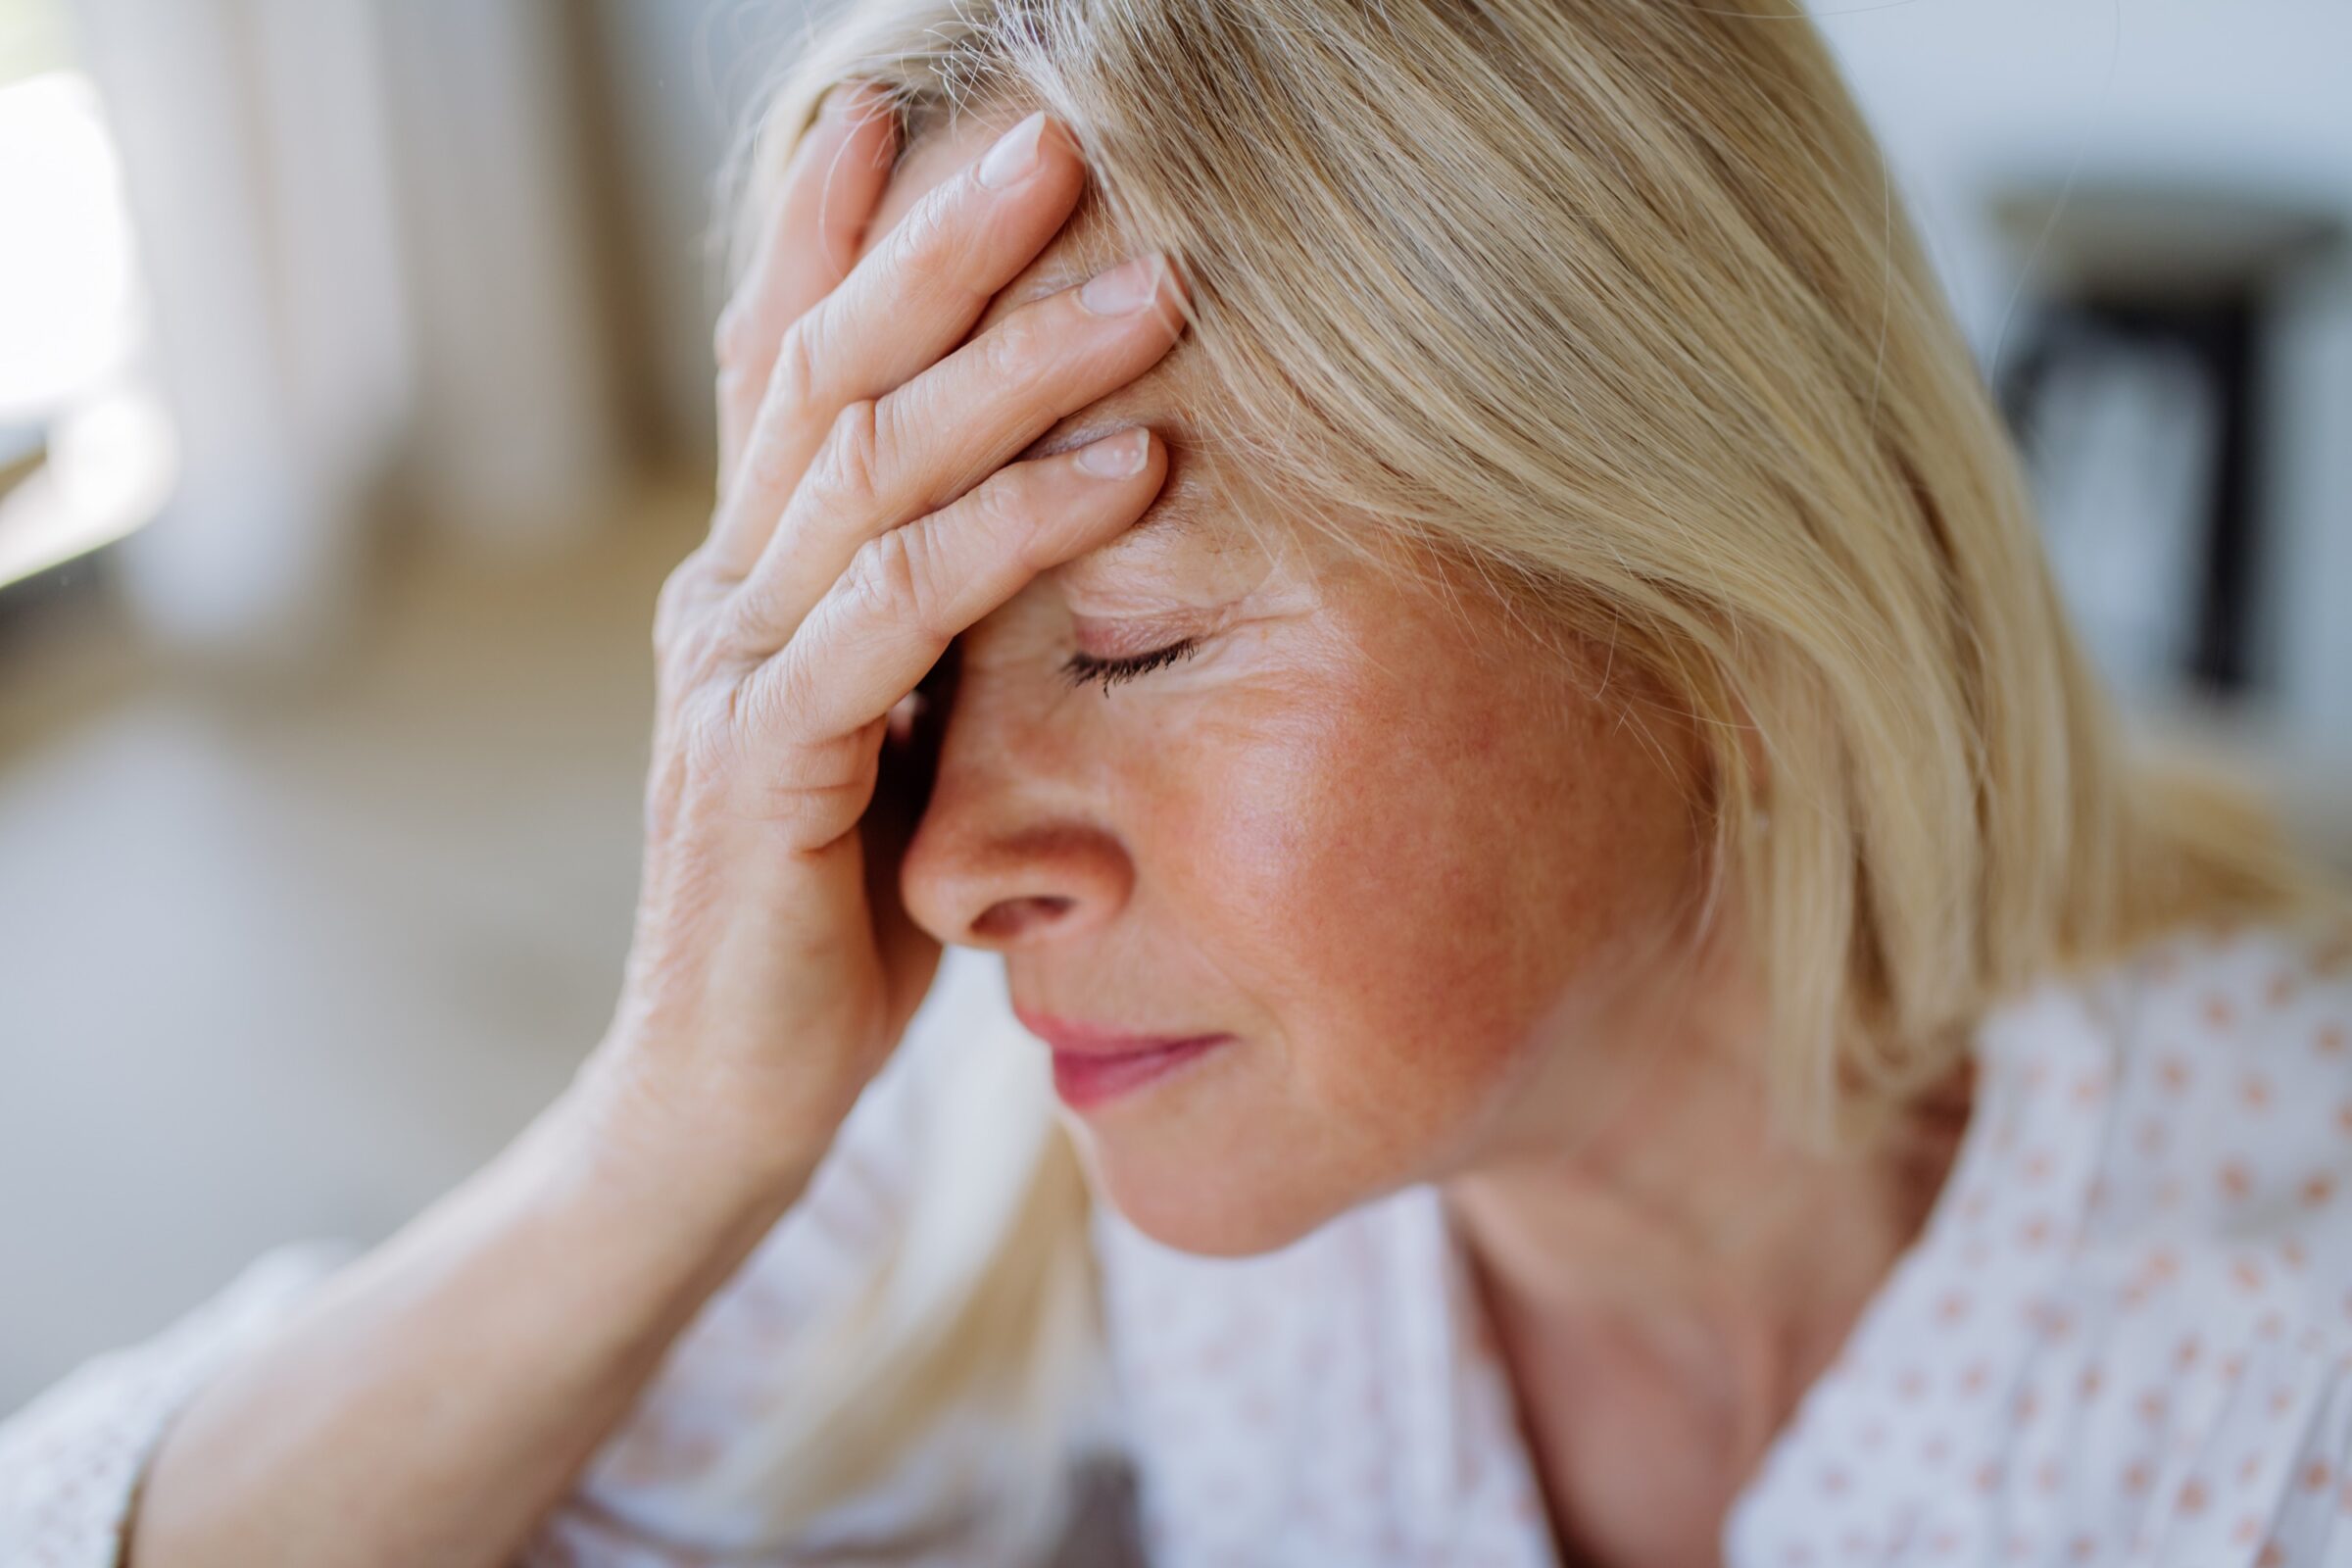 Migren atakları sırasında pek çok kişi bulantı ve kusma sorunları da yaşıyor. Peki, migren sırasında neden bulantı oluyor?